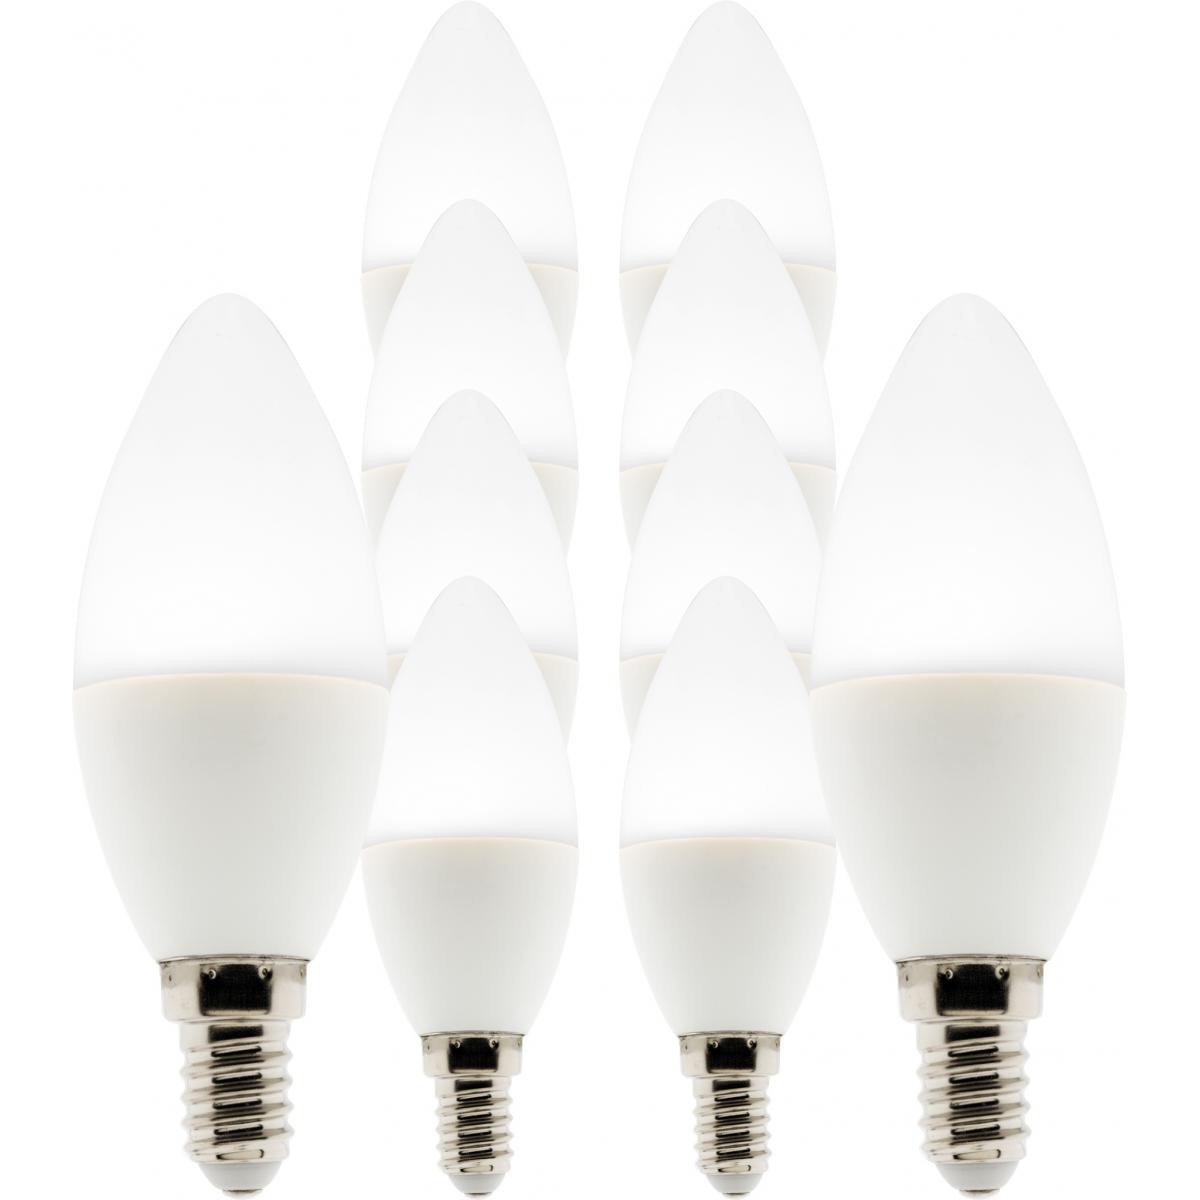 Elexity - Lot de 10 ampoules LED Flamme 5W E14 400lm 6500K - Ampoules LED